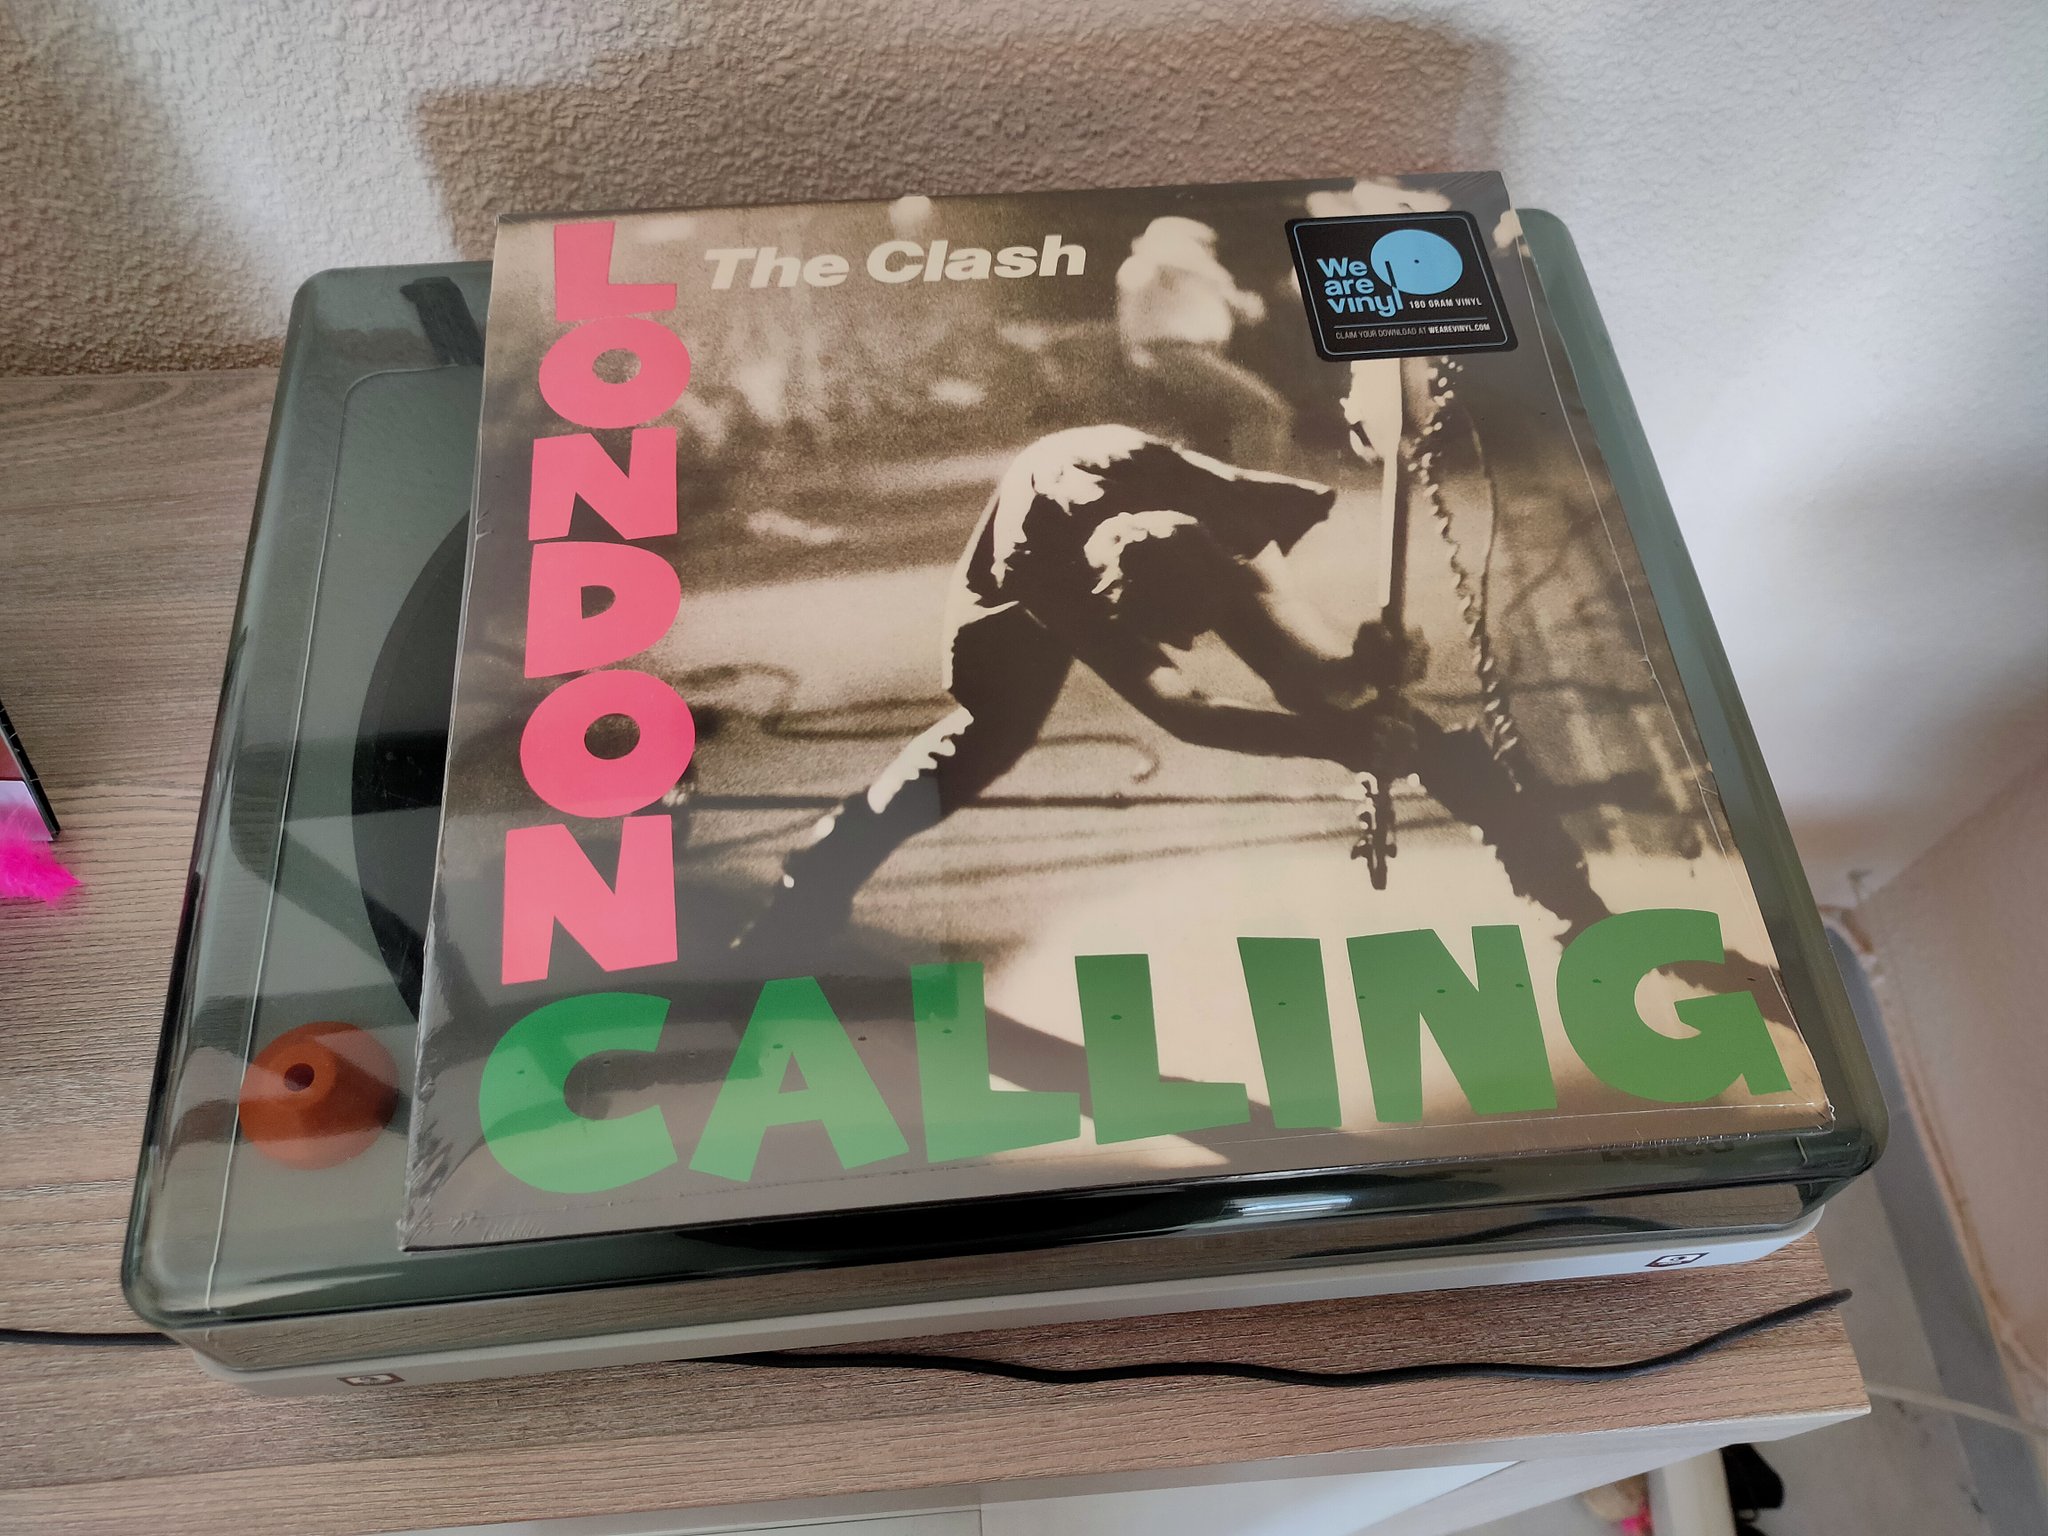 Una canción del disco London Calling de The Clash fue utilizada por el abogado del Chapo para ejemplificar el juicio del capo mexicano (Foto: Twitter / @MorenoRos)